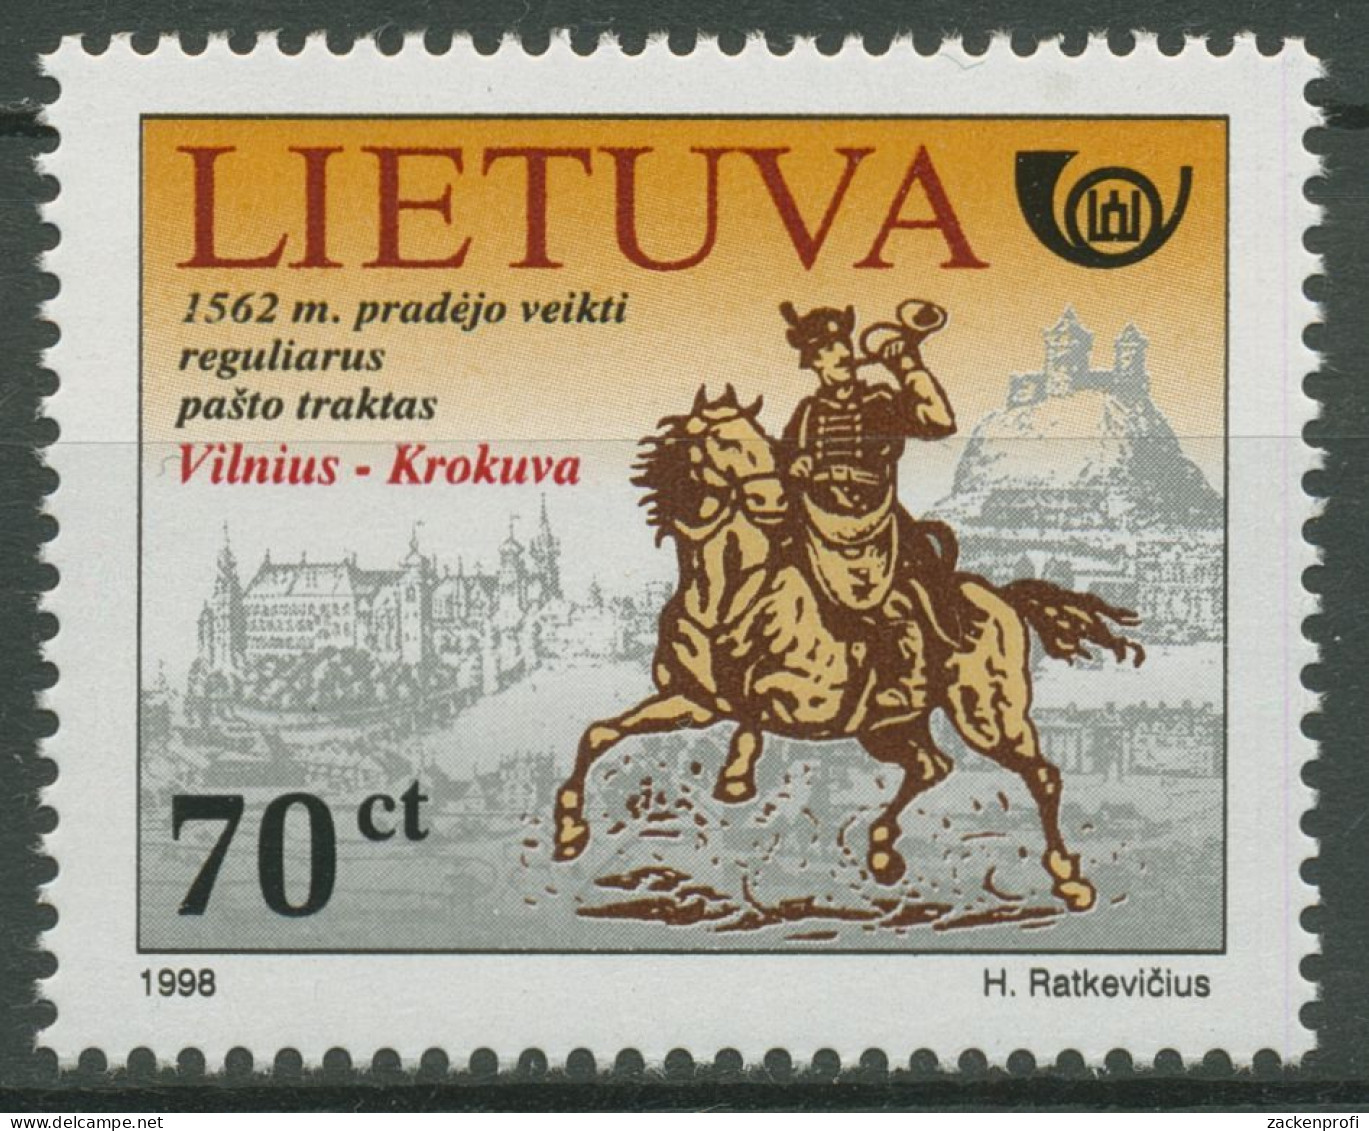 Litauen 1998 Litauische Post Postreiter 676 Postfrisch - Litauen